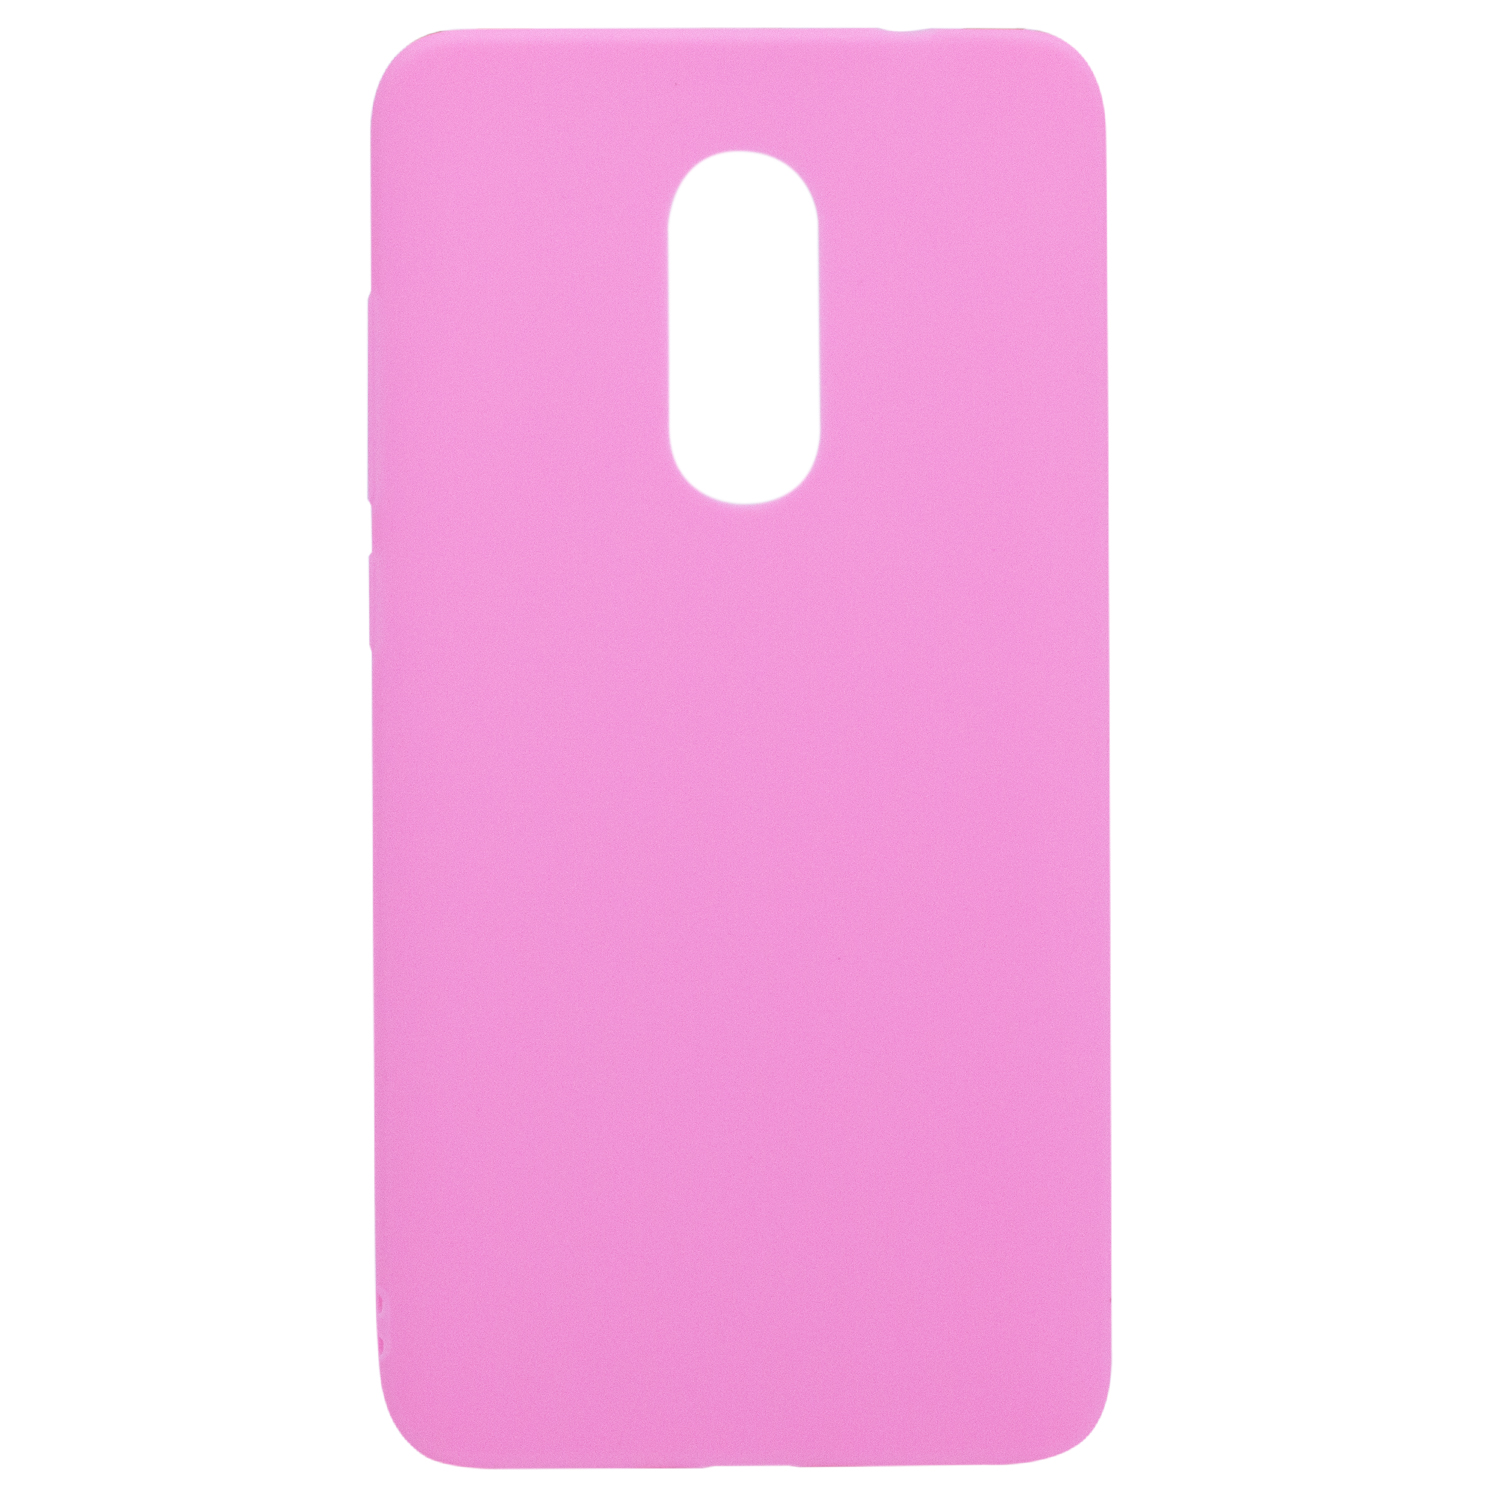 Силиконовый чехол Candy для Xiaomi Redmi Note 4X (Розовый)